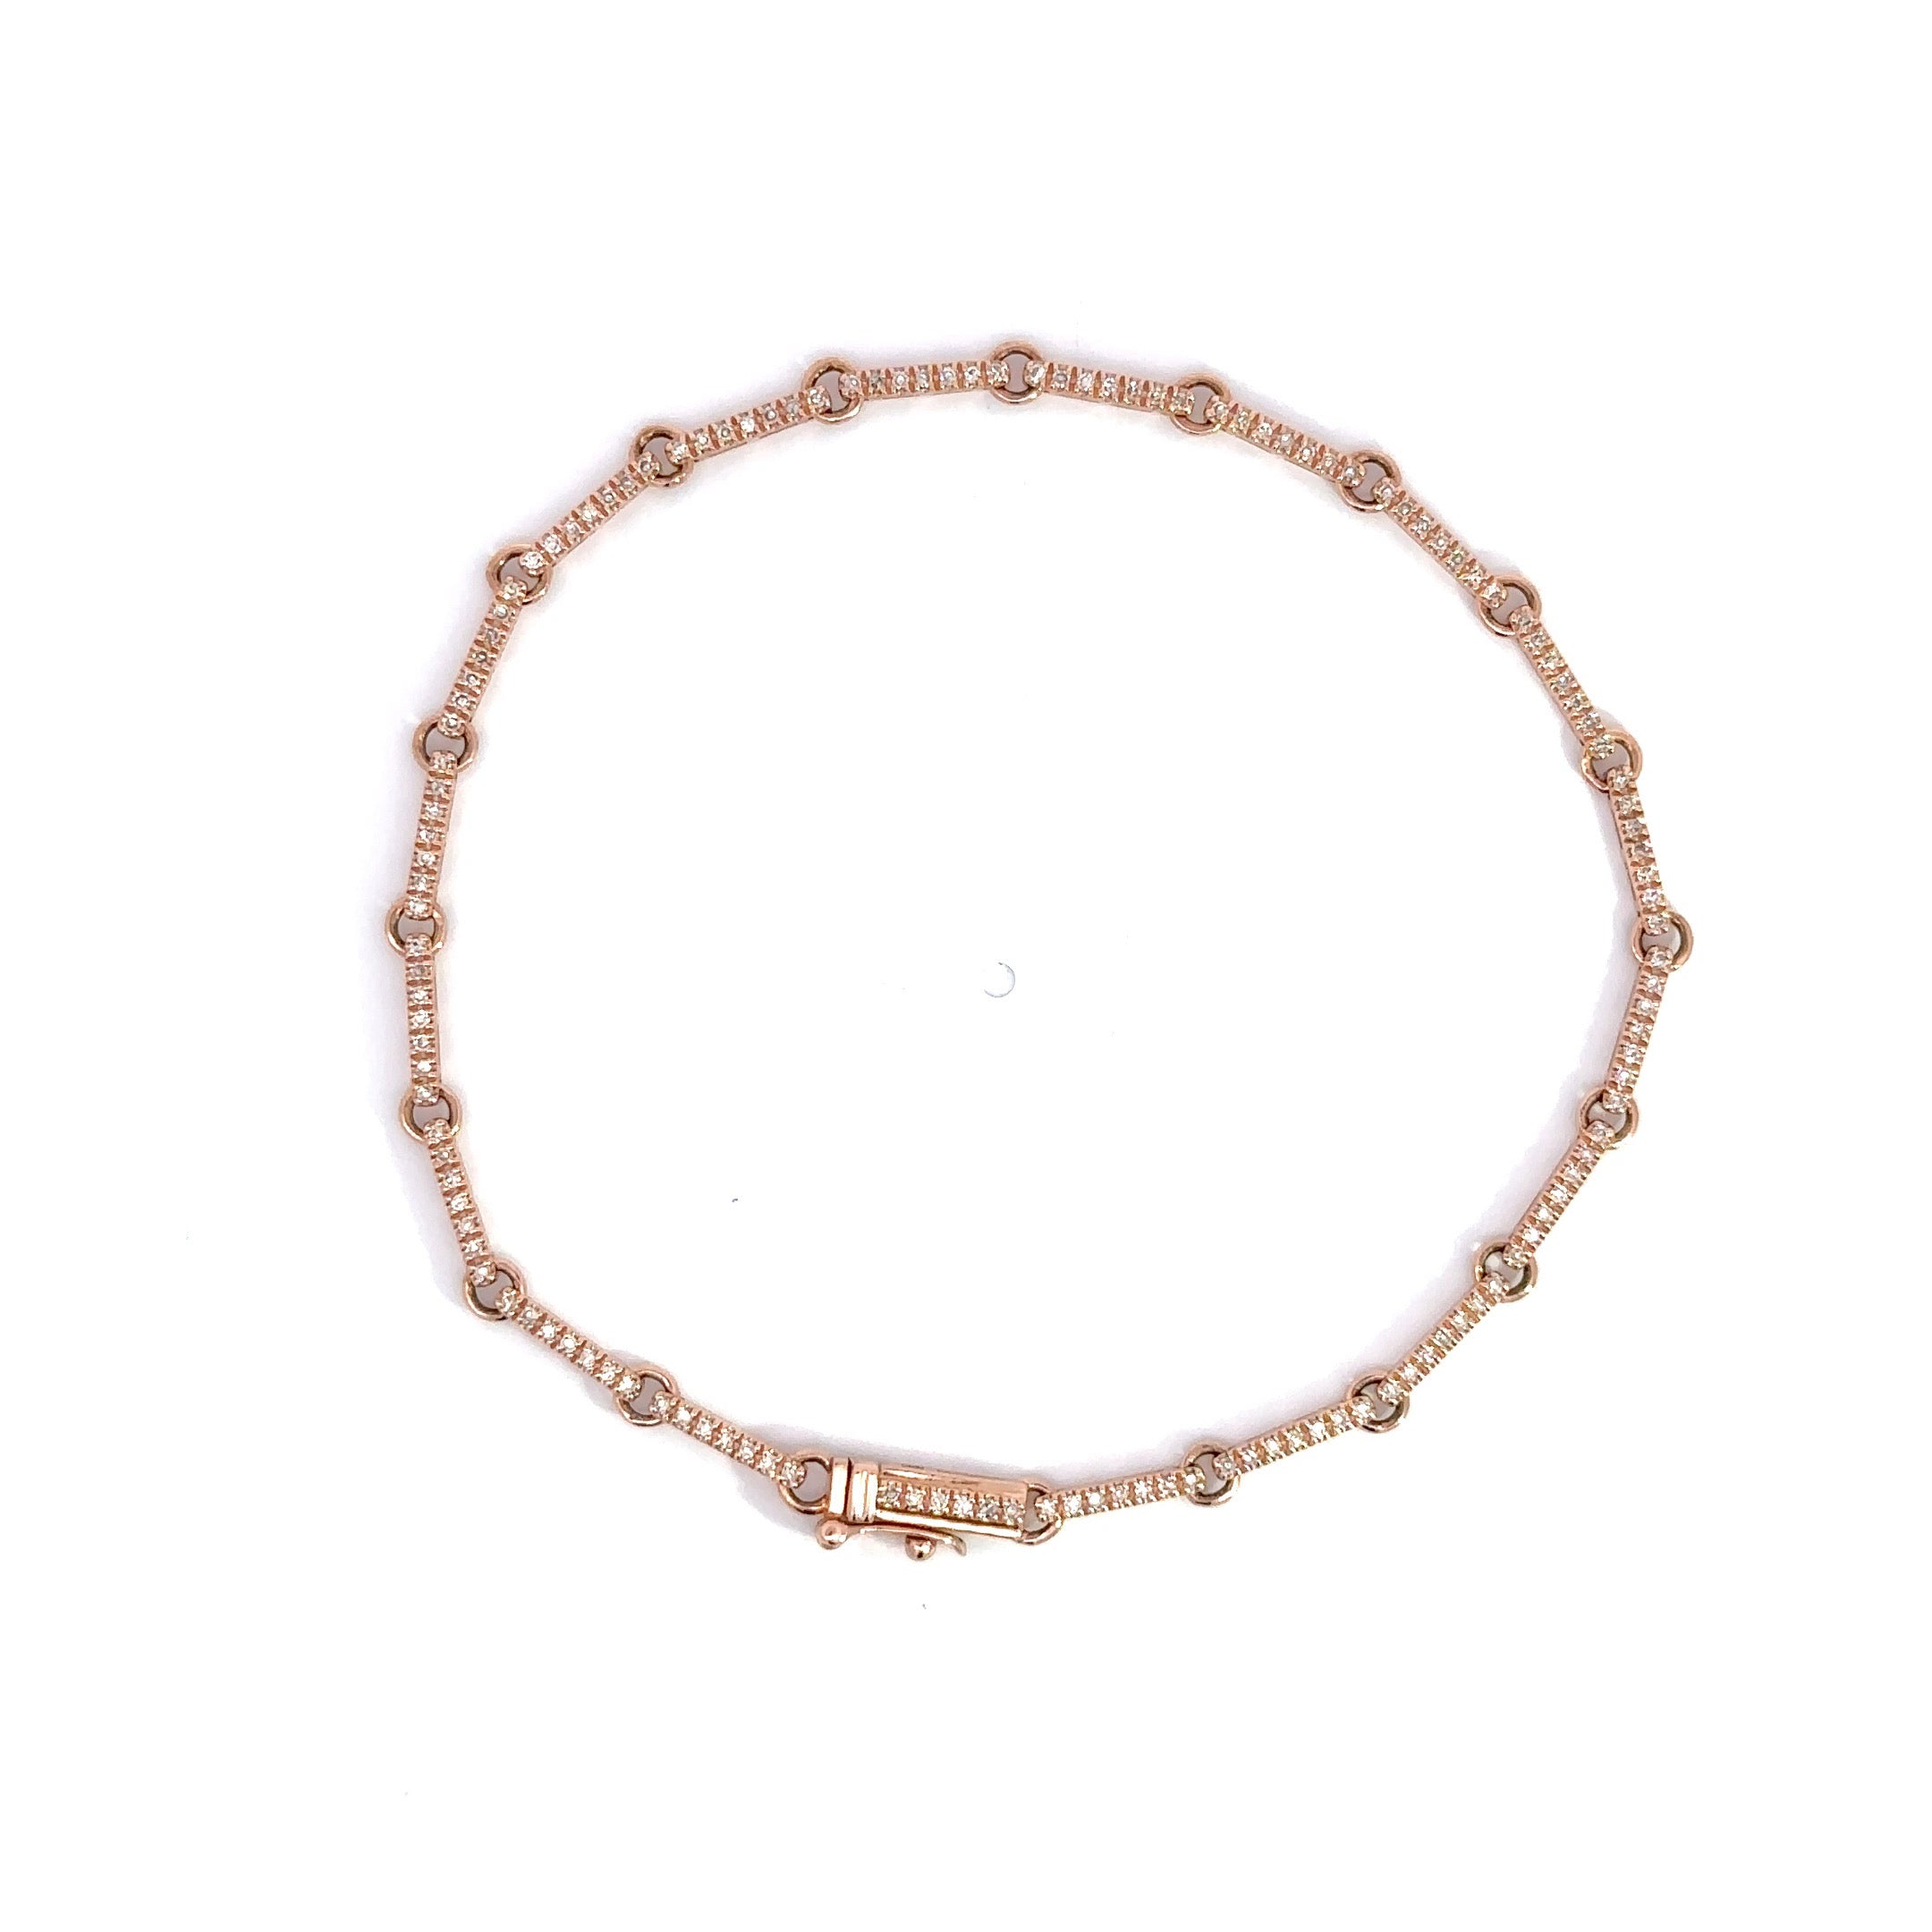 WD746 14kt gold bar link bracelet detailed with pave set diamonds